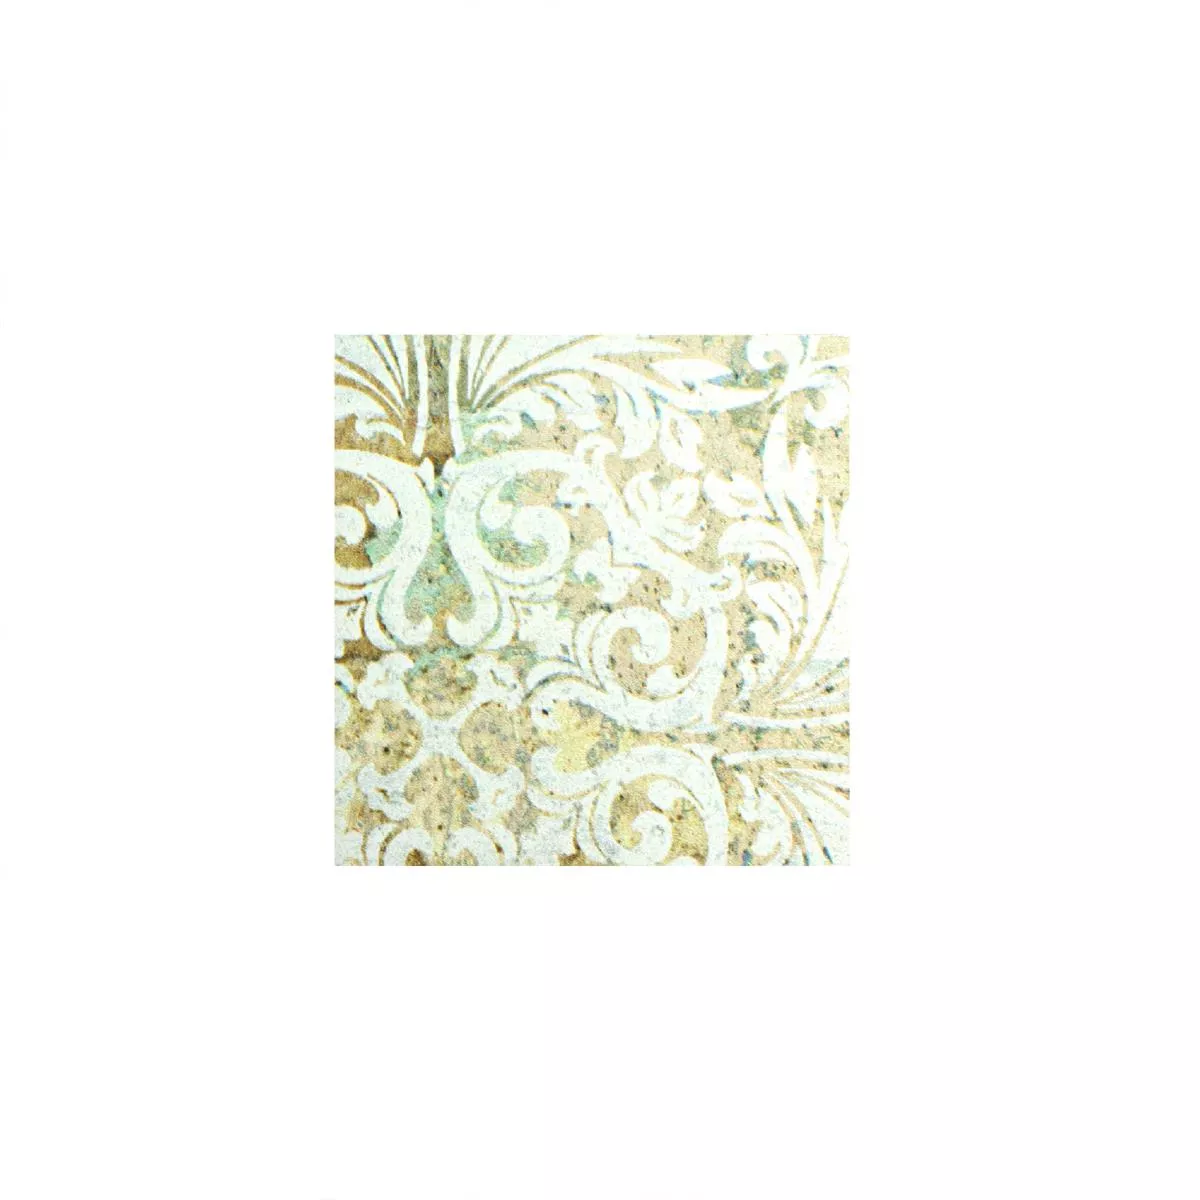 Muster von Keramikmosaik Fliesen Bellona Effekt Hellbunt 95x95mm